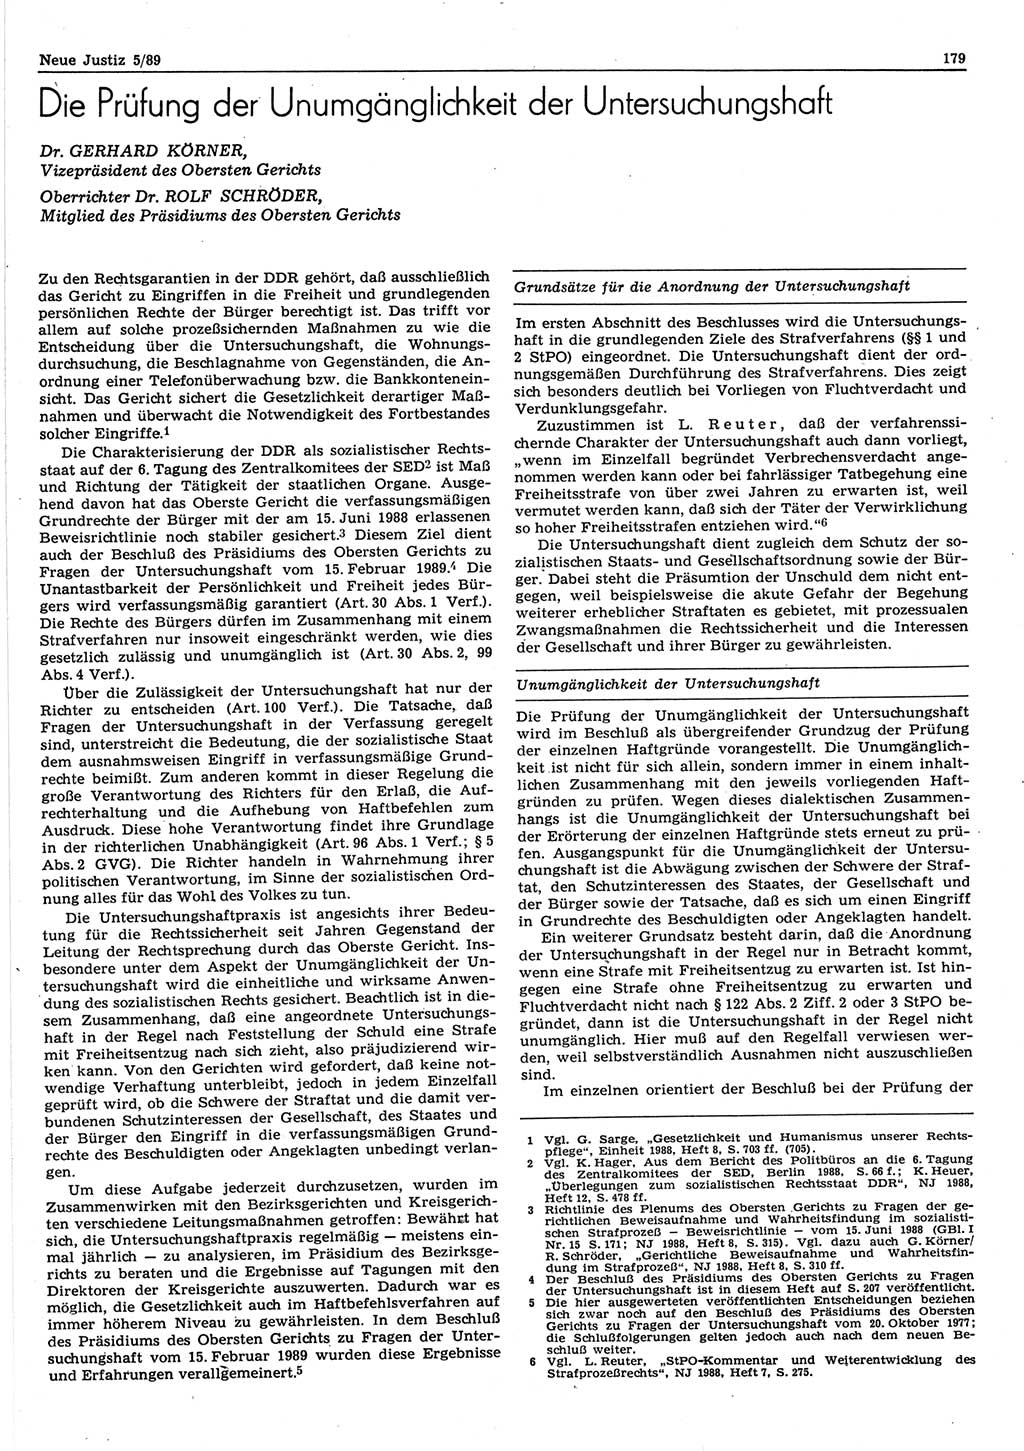 Neue Justiz (NJ), Zeitschrift für sozialistisches Recht und Gesetzlichkeit [Deutsche Demokratische Republik (DDR)], 43. Jahrgang 1989, Seite 179 (NJ DDR 1989, S. 179)